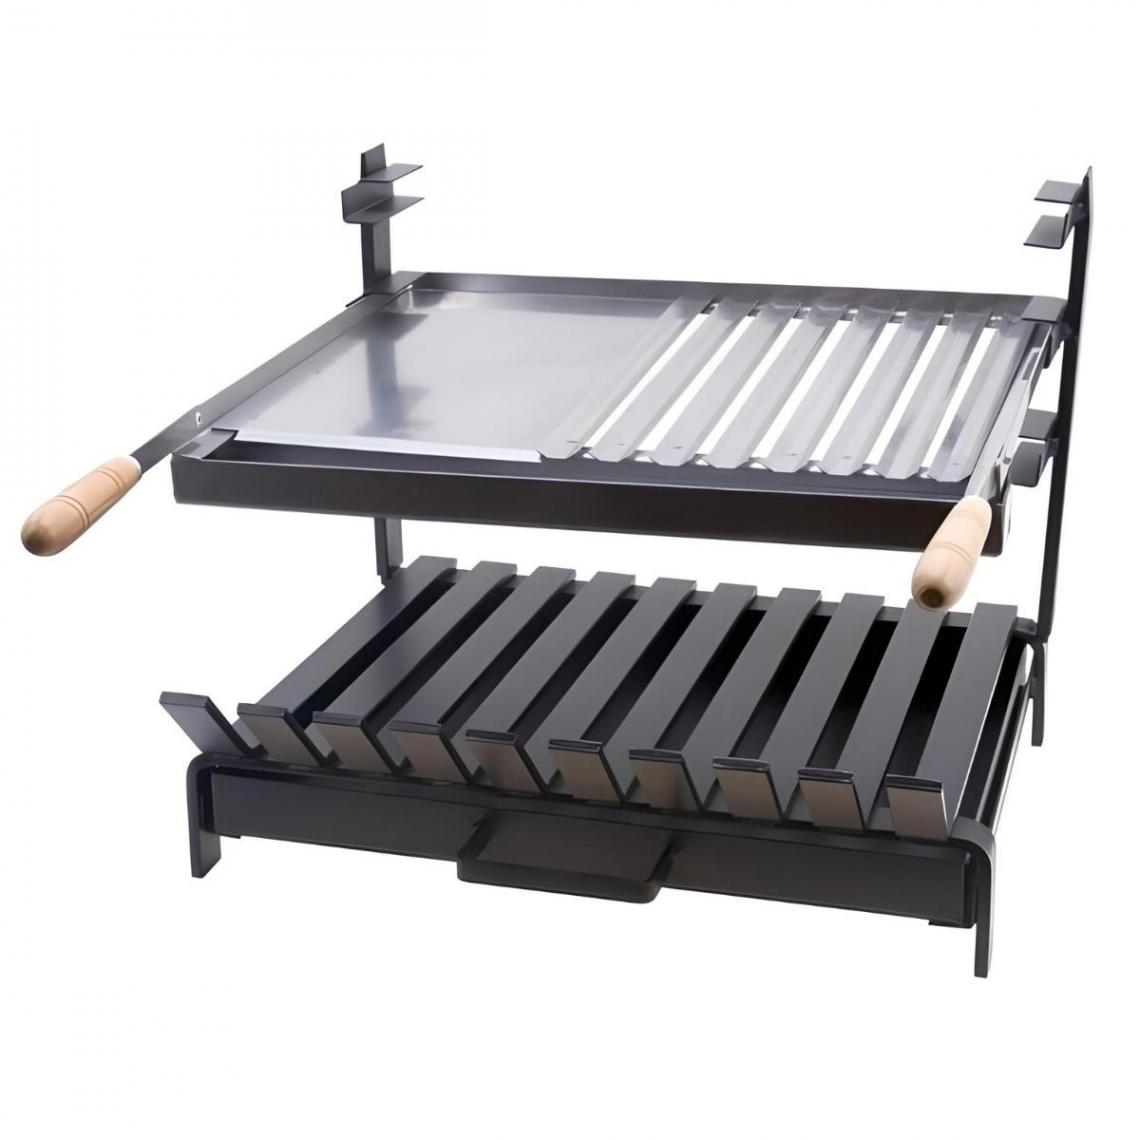 Visiodirect - Grille à rôtir avec tiroir et récupérateur de graisse en Inox coloris Noir - 50 x 45 x 40 cm - Accessoires barbecue